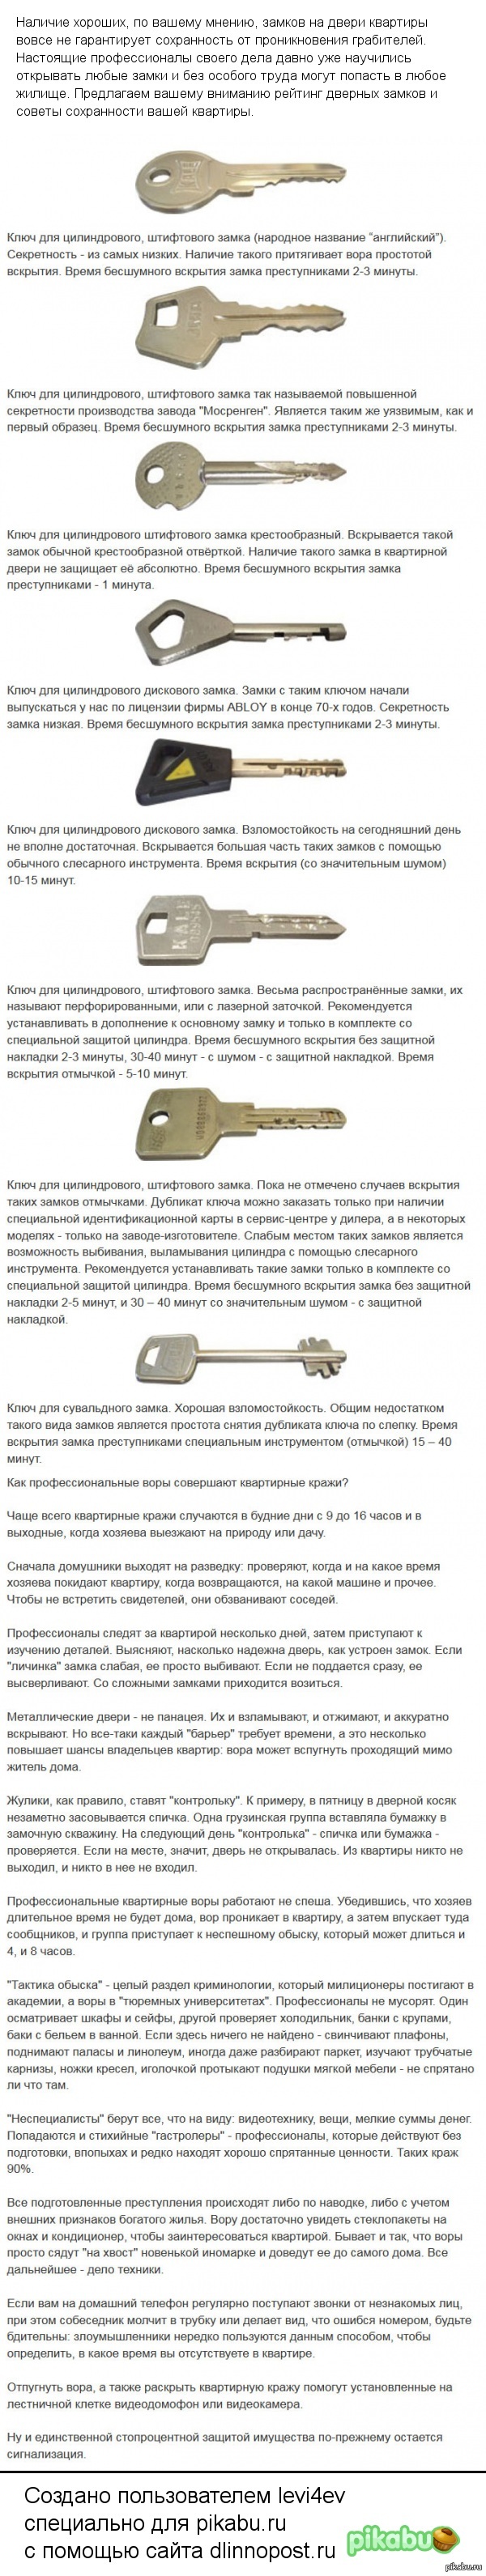 Виды Дверных Ключей Фото И Название